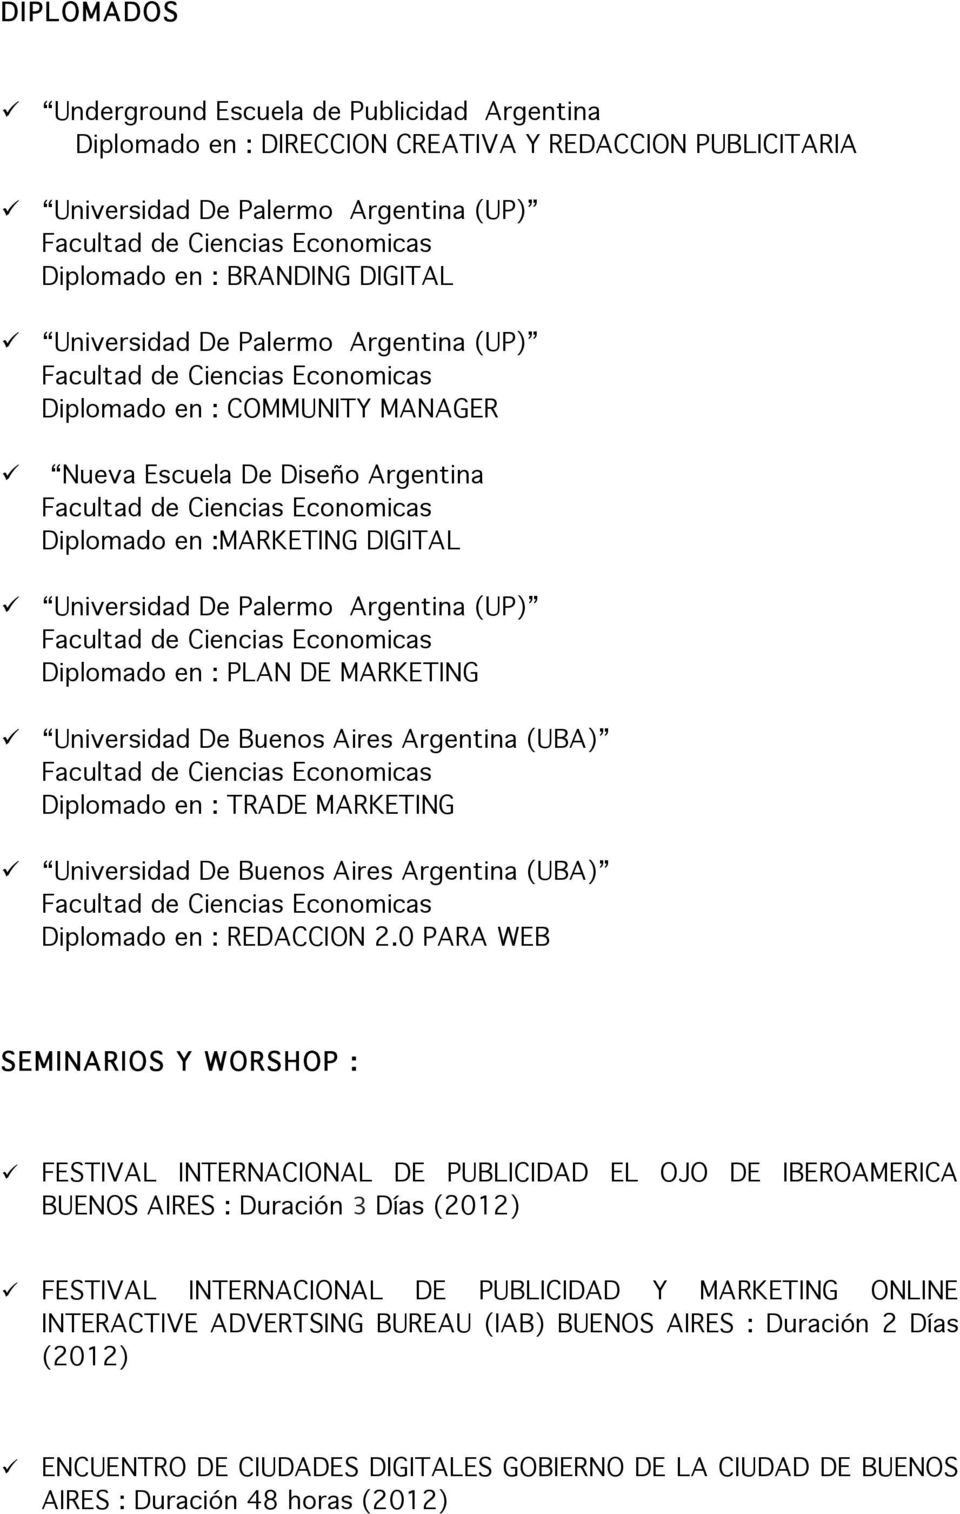 Universidad De Buenos Aires Argentina (UBA) Diplomado en : TRADE MARKETING Universidad De Buenos Aires Argentina (UBA) Diplomado en : REDACCION 2.